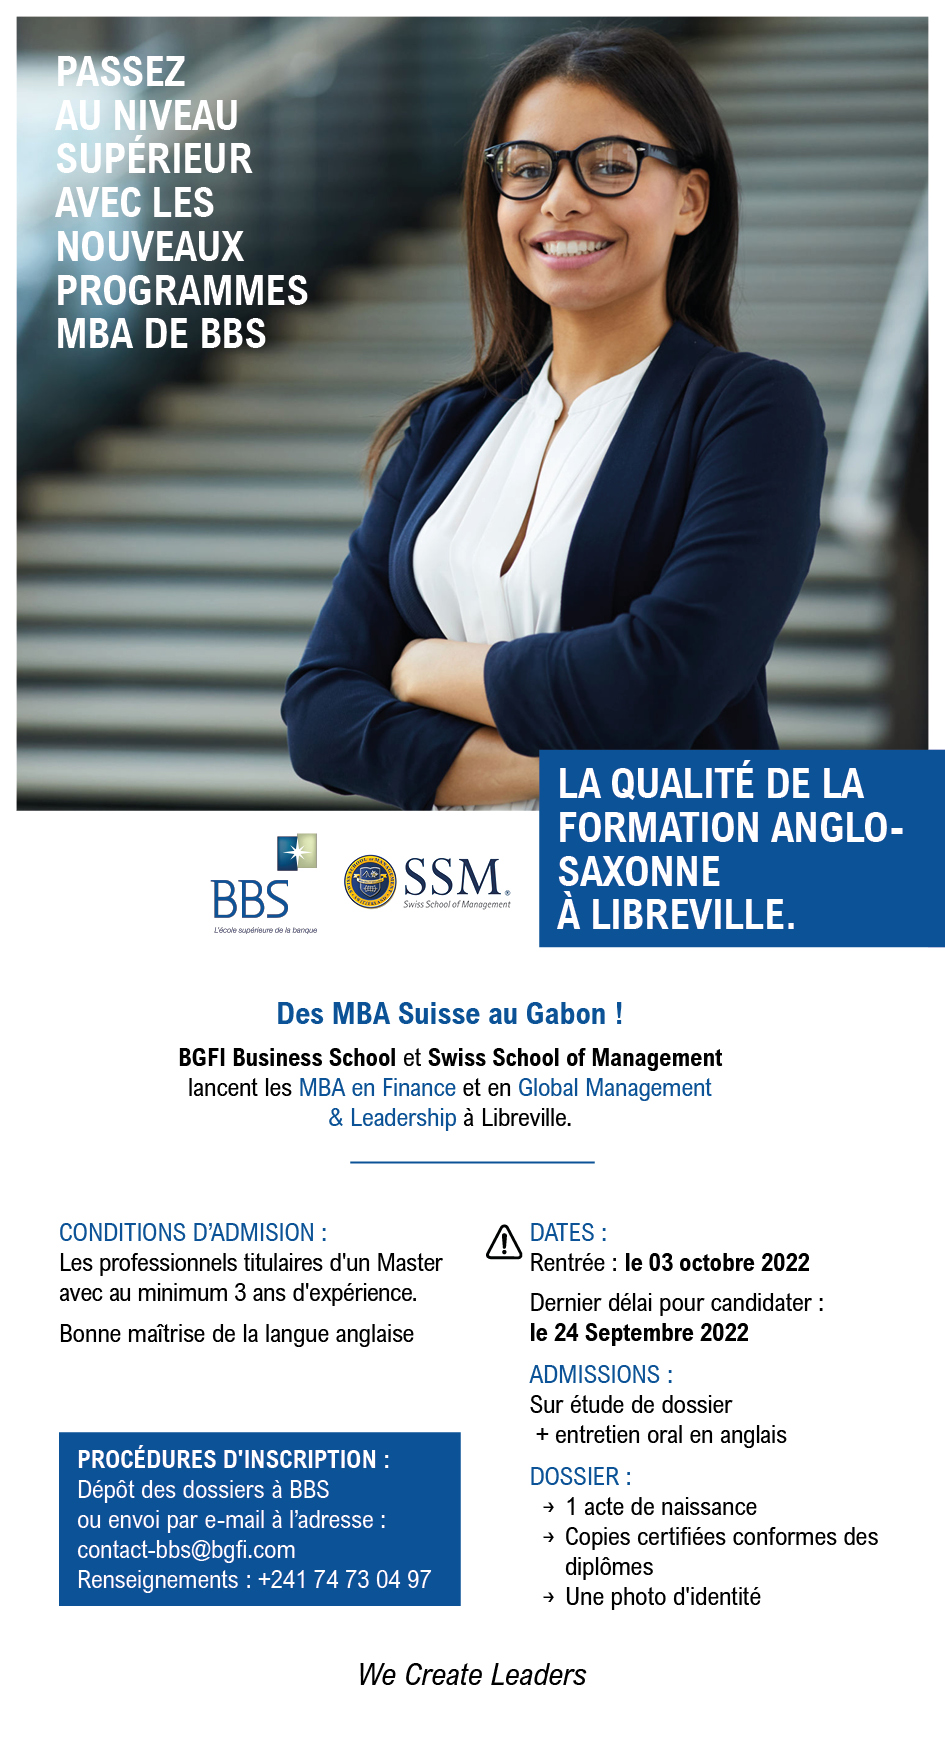 https://bbs-school.com/files/bbs_mba_suisse_rs_0003.jpg